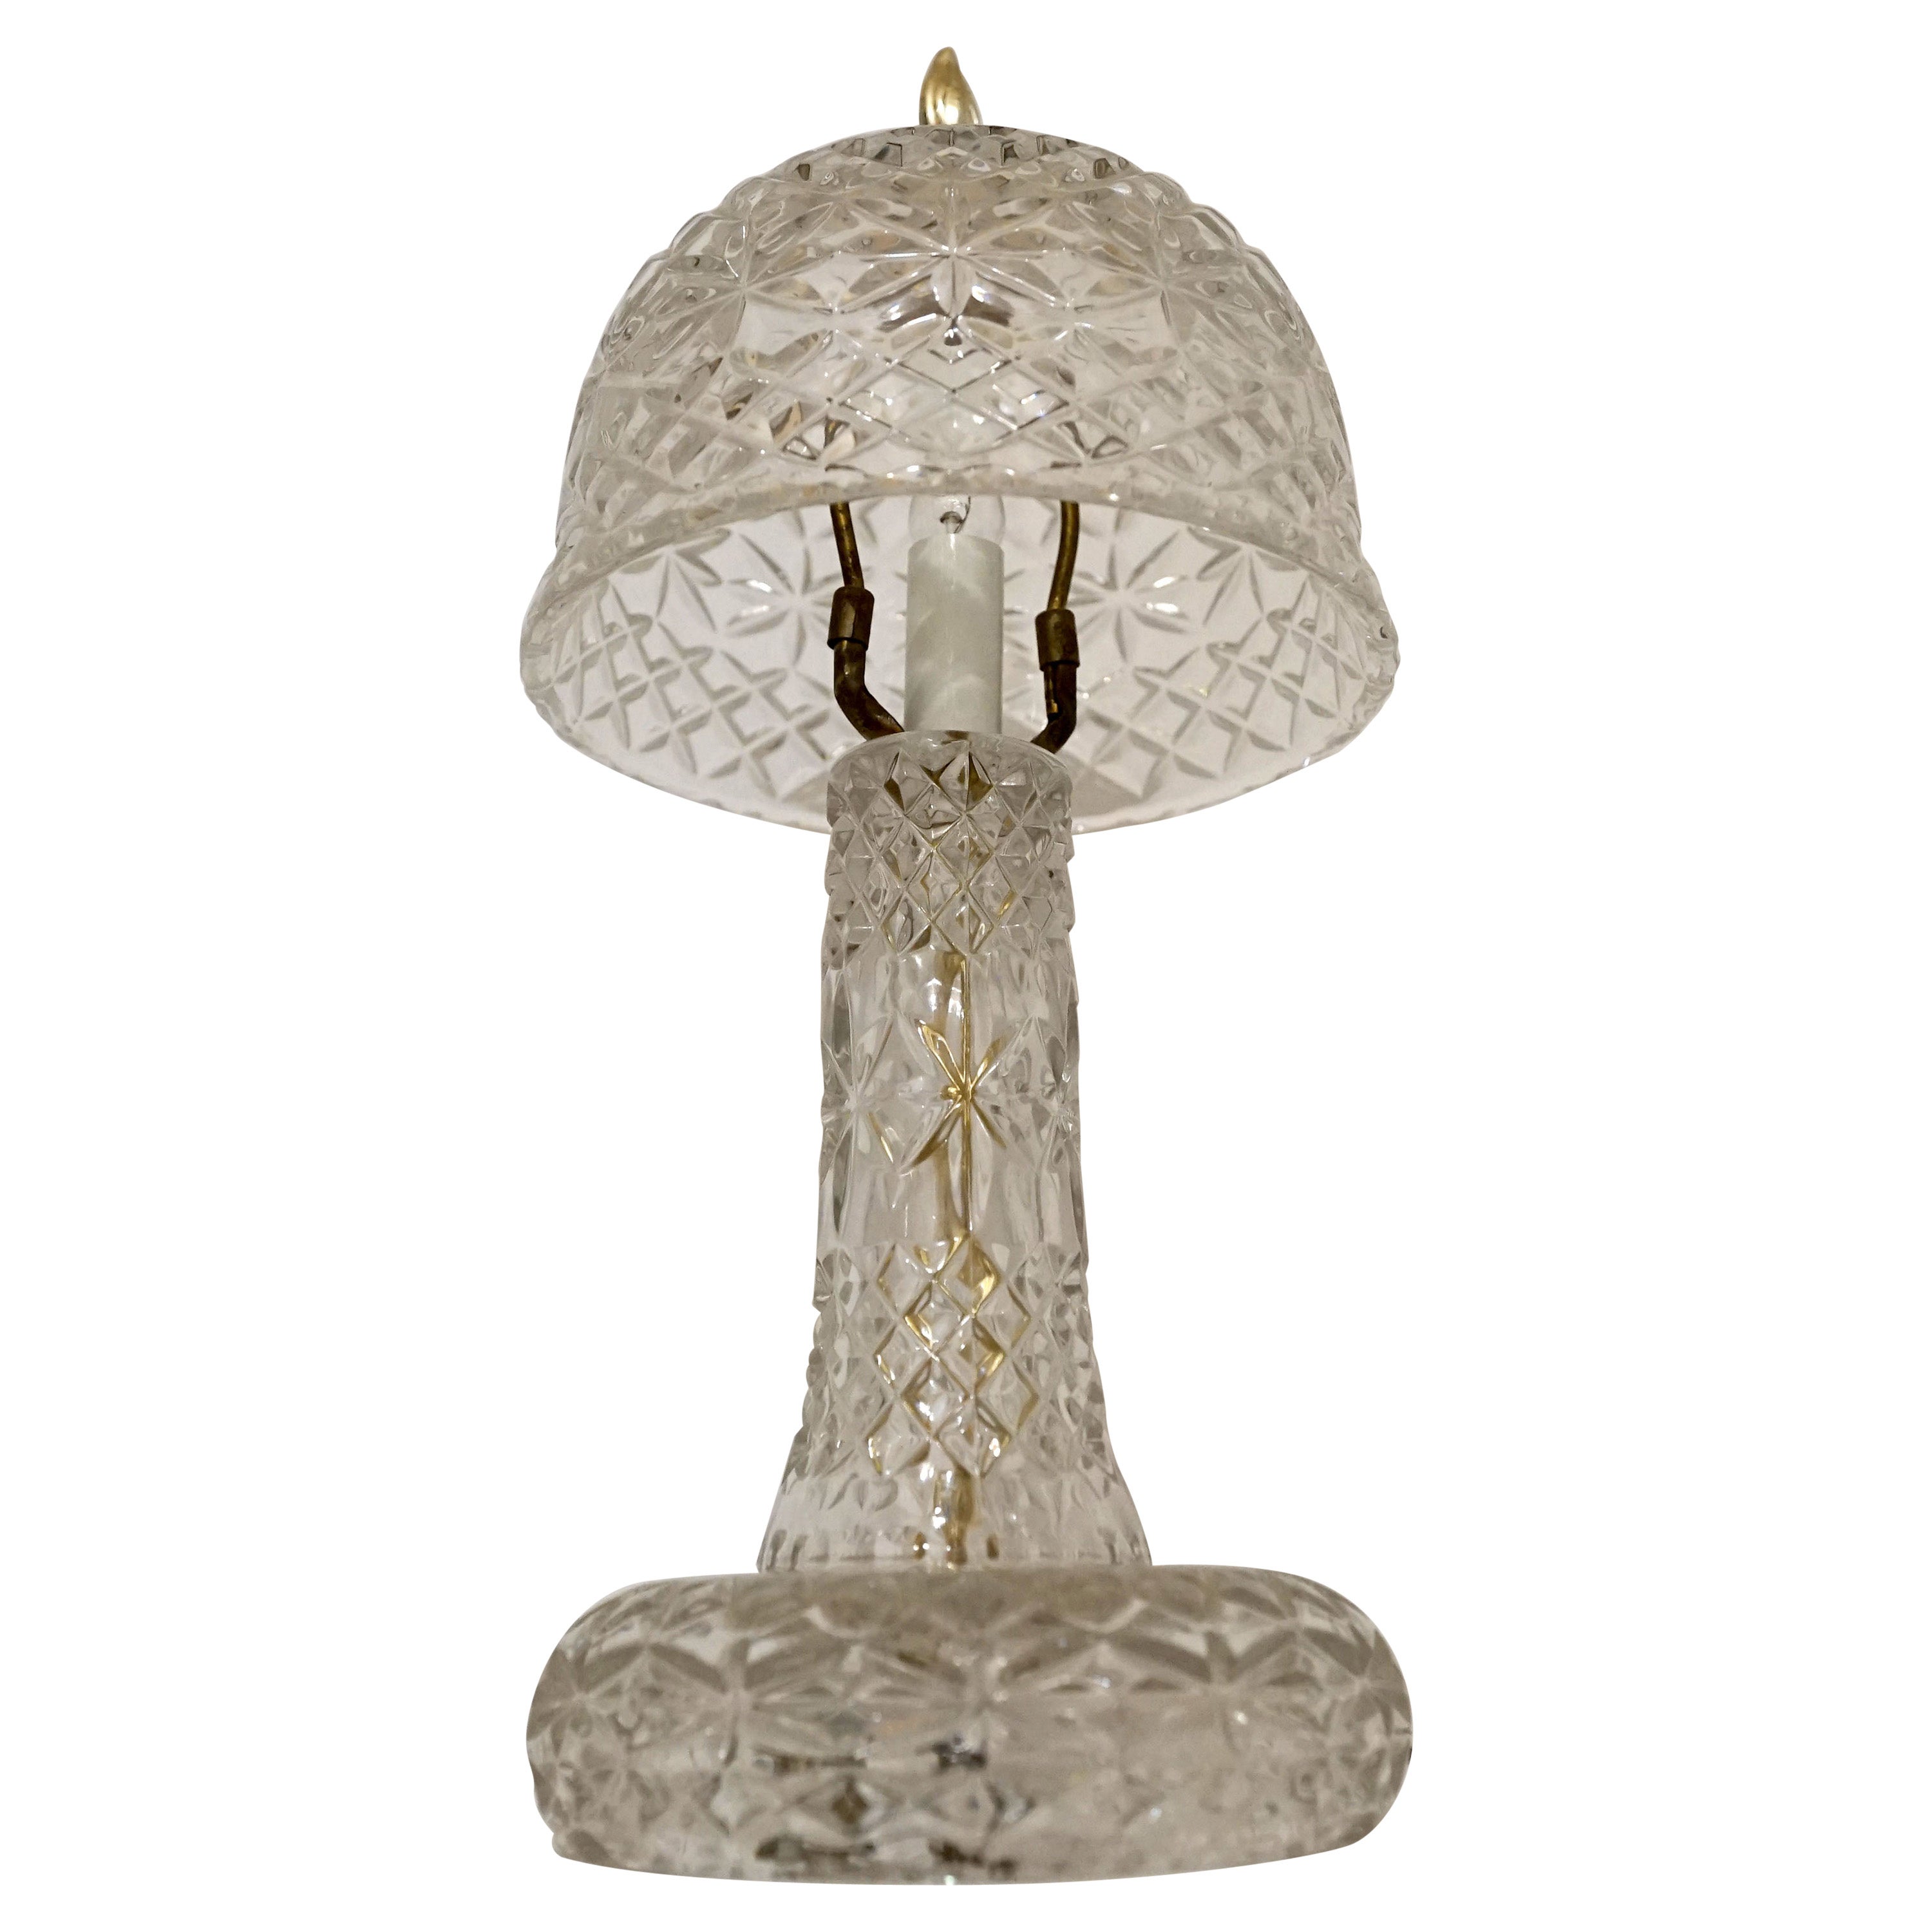 Gepresst verbleit Vintage Kristall Pilz Schatten Form Tischlampe